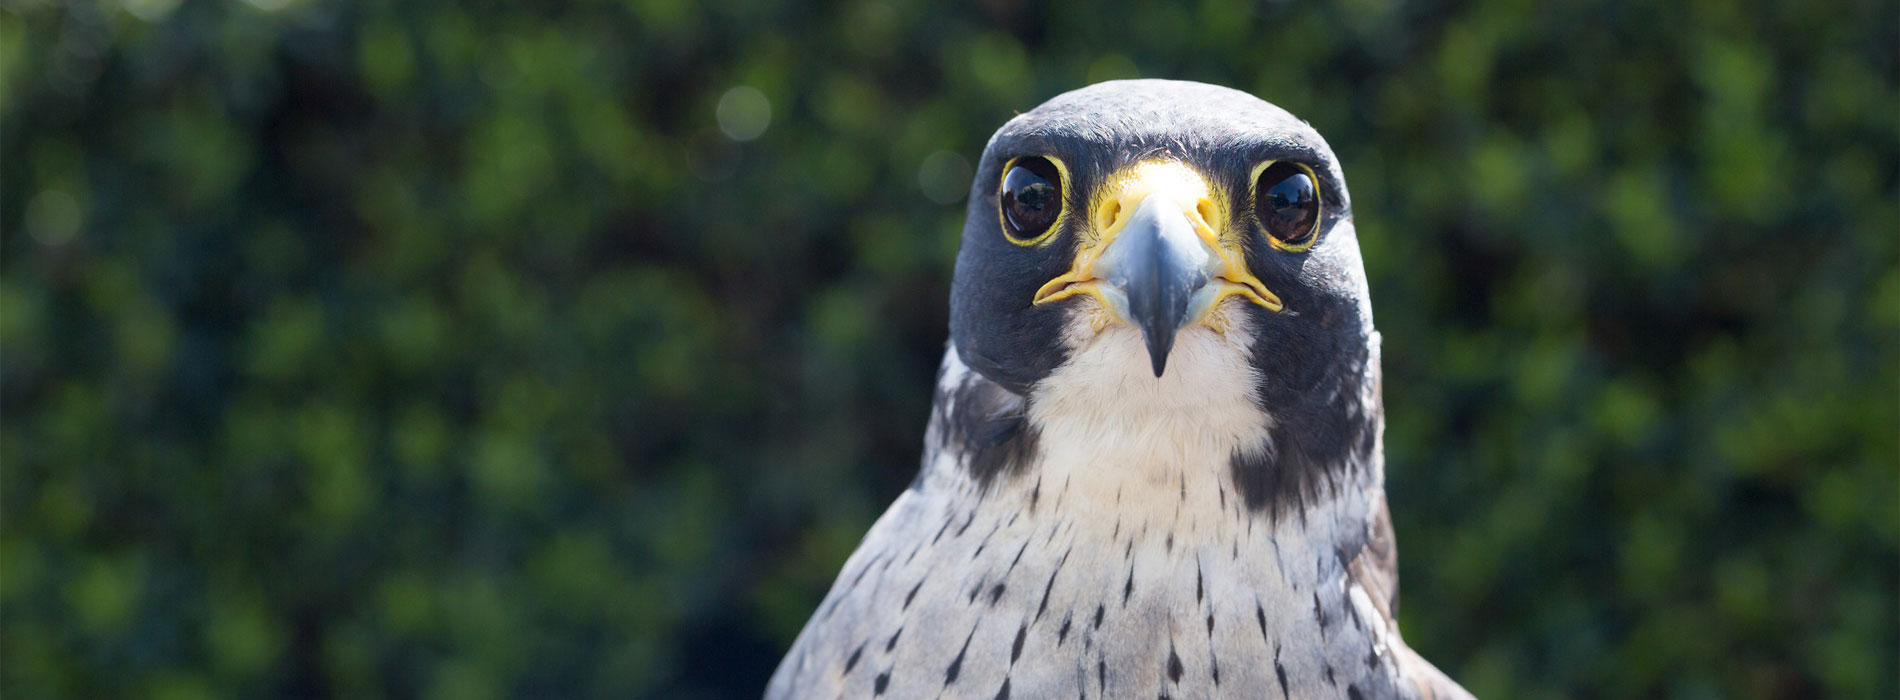 Falcon face